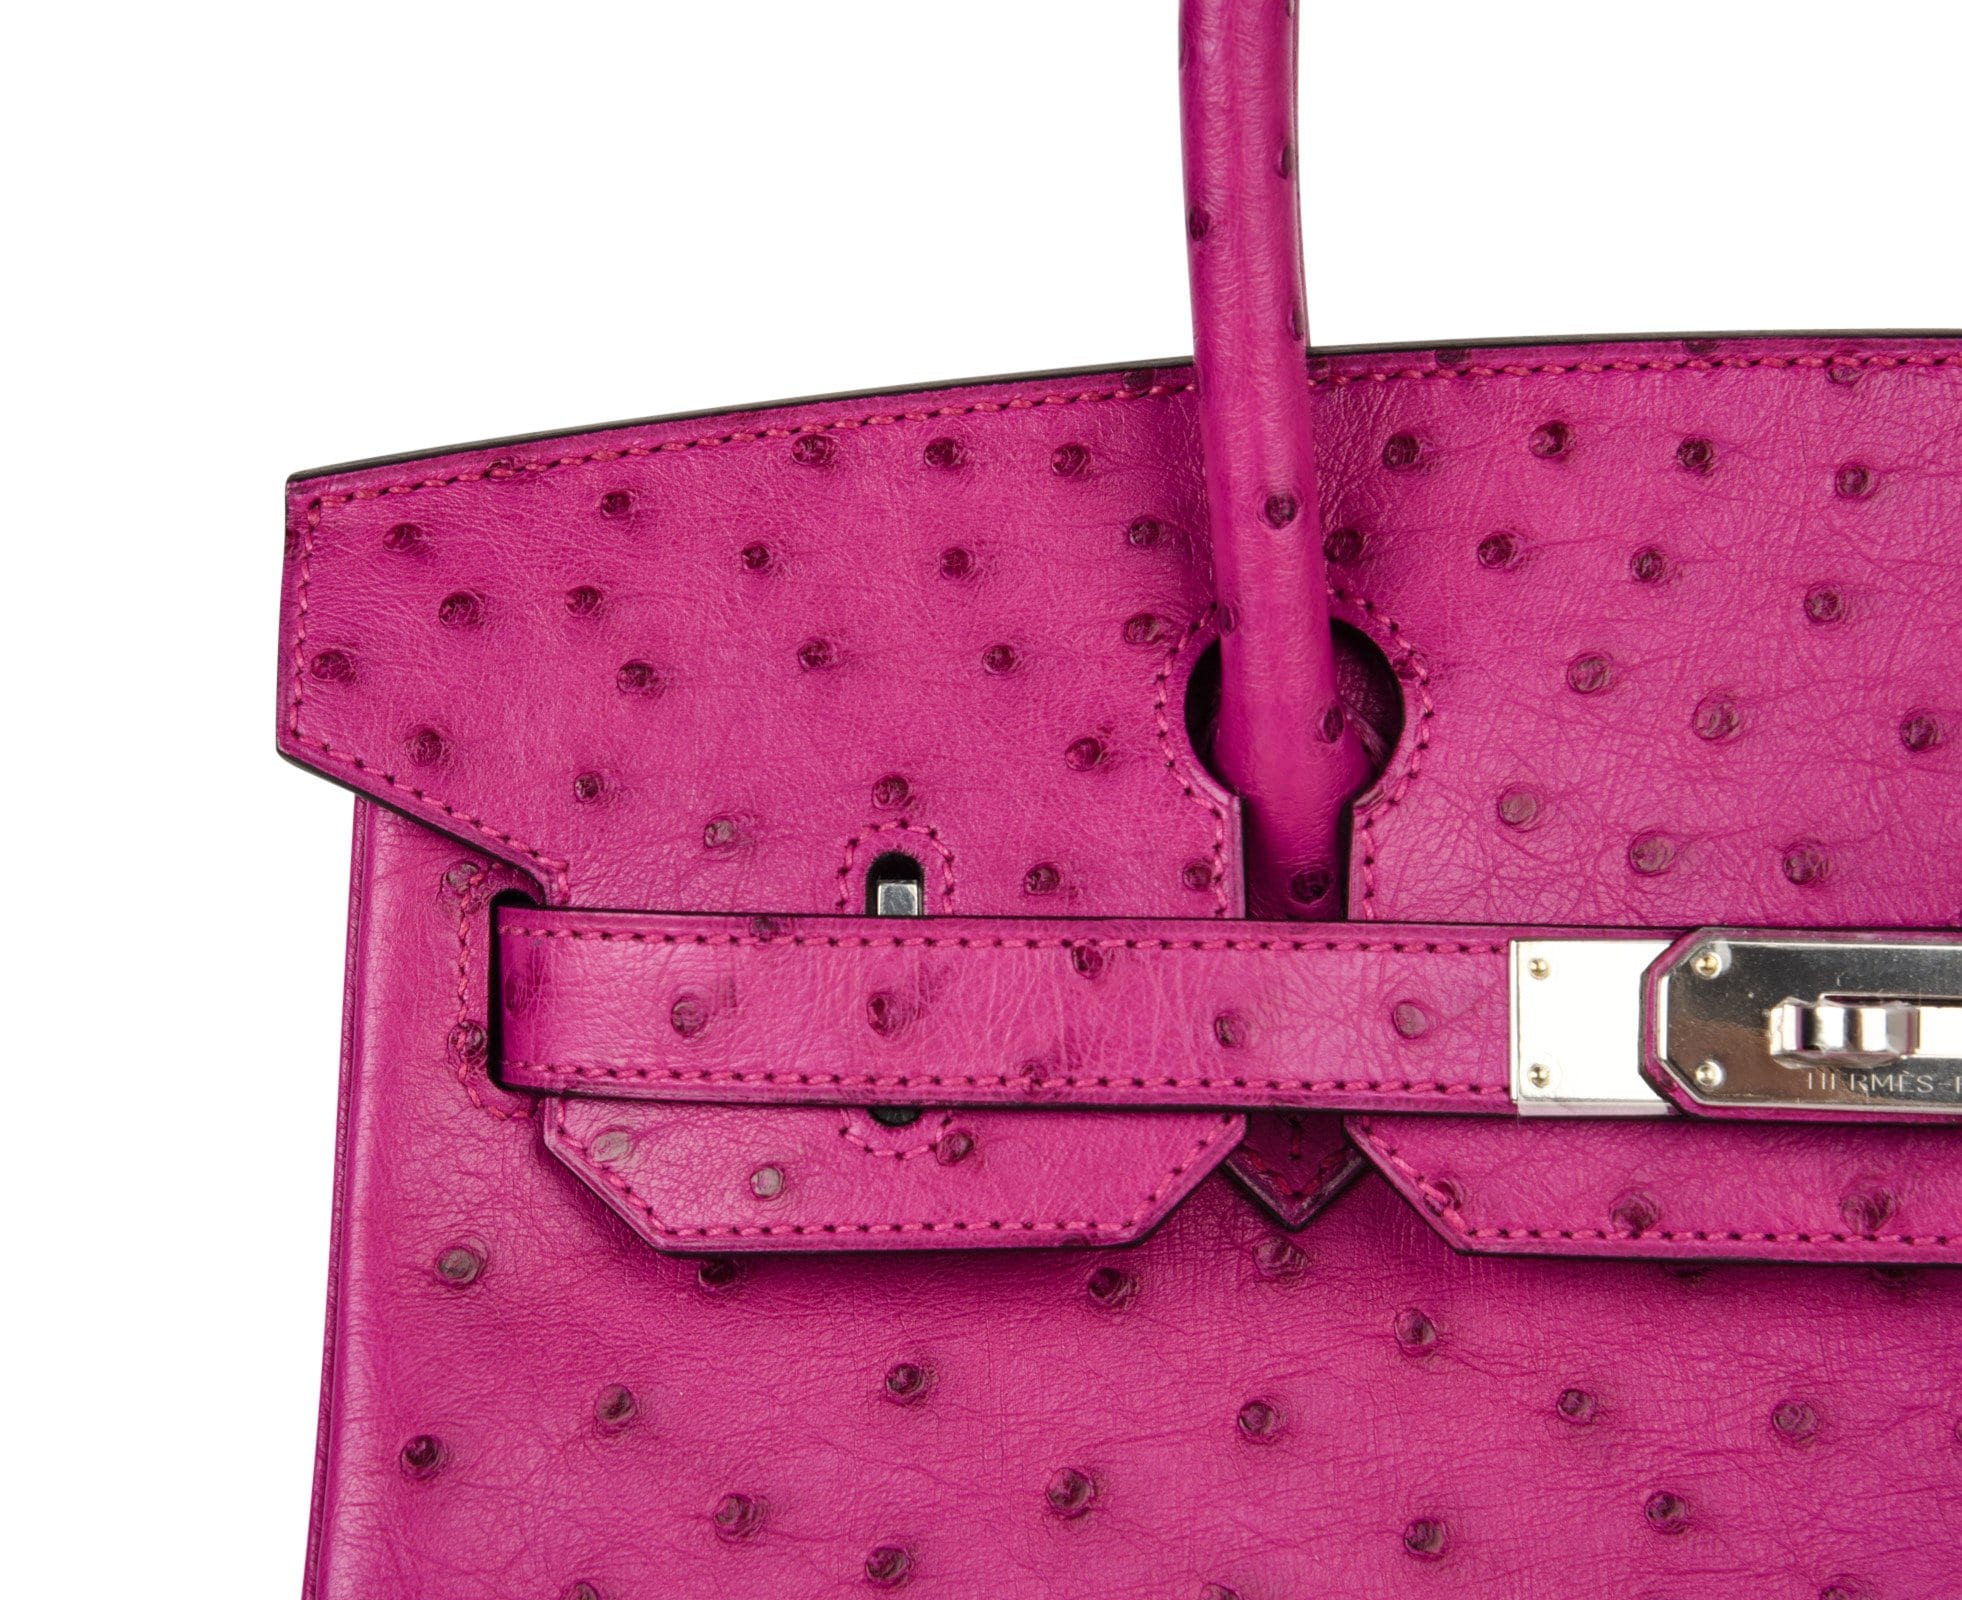 Hermès Birkin Rose Tyrien Ostrich 30 Palladium Hardware, 2018 (Very Good), Pink/Silver Womens Handbag